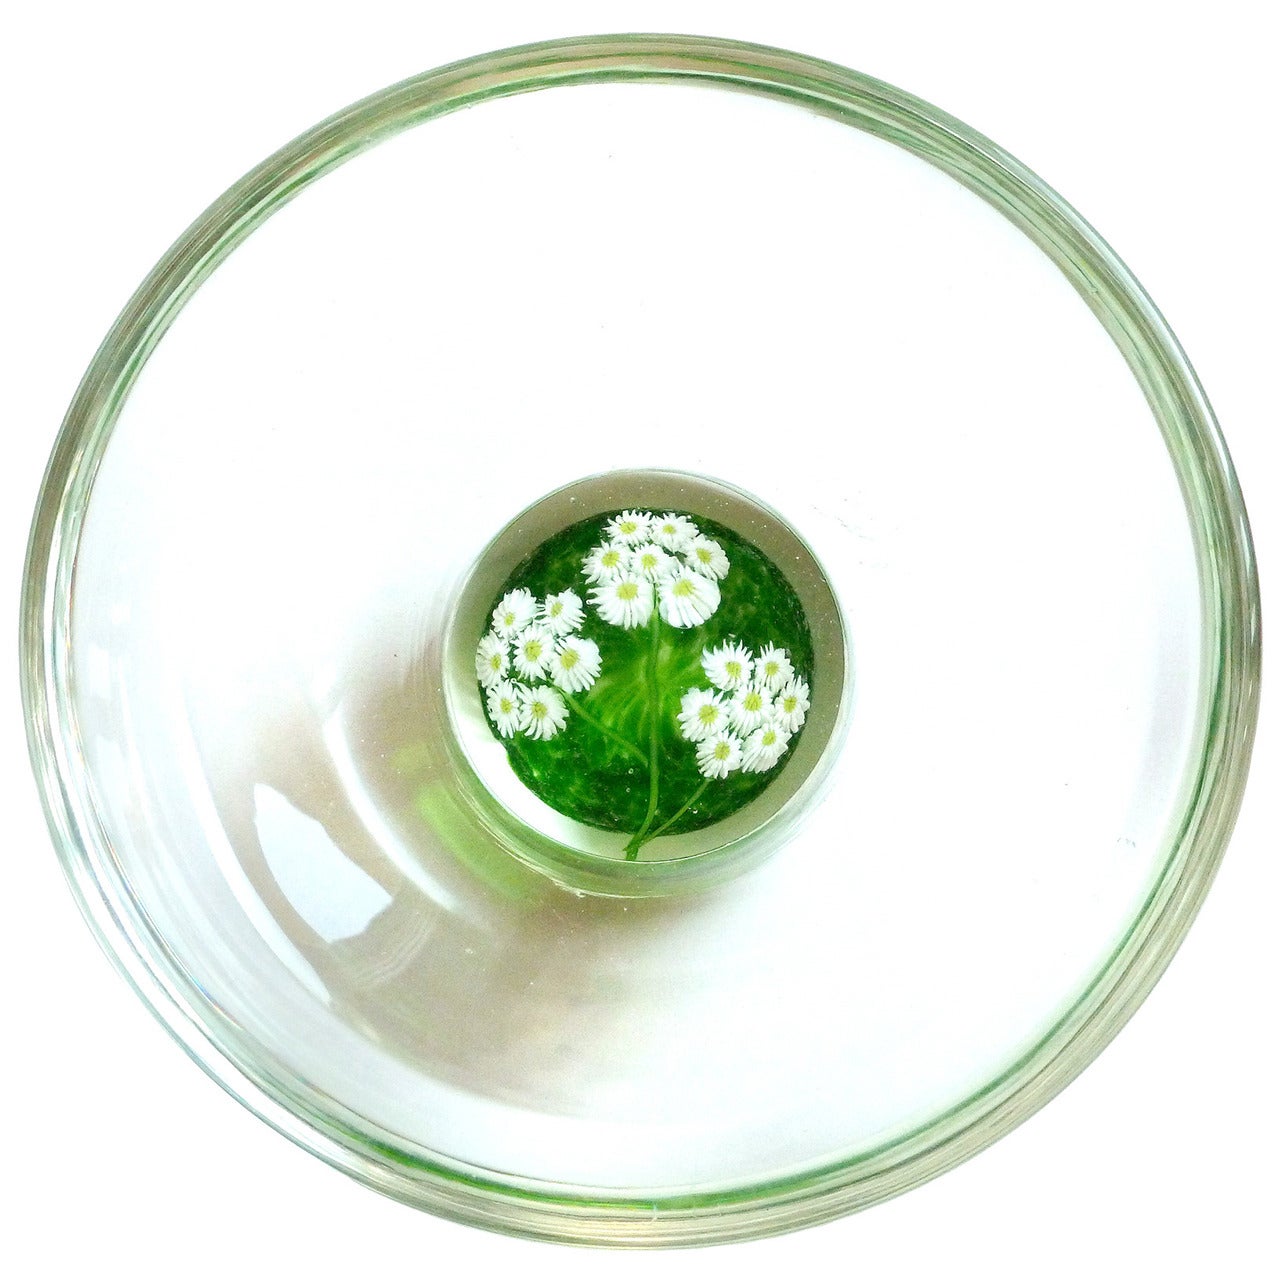 Fratelli Toso Murano Millefiori Wild Flowers Italian Art Glass Paperweight Bowl